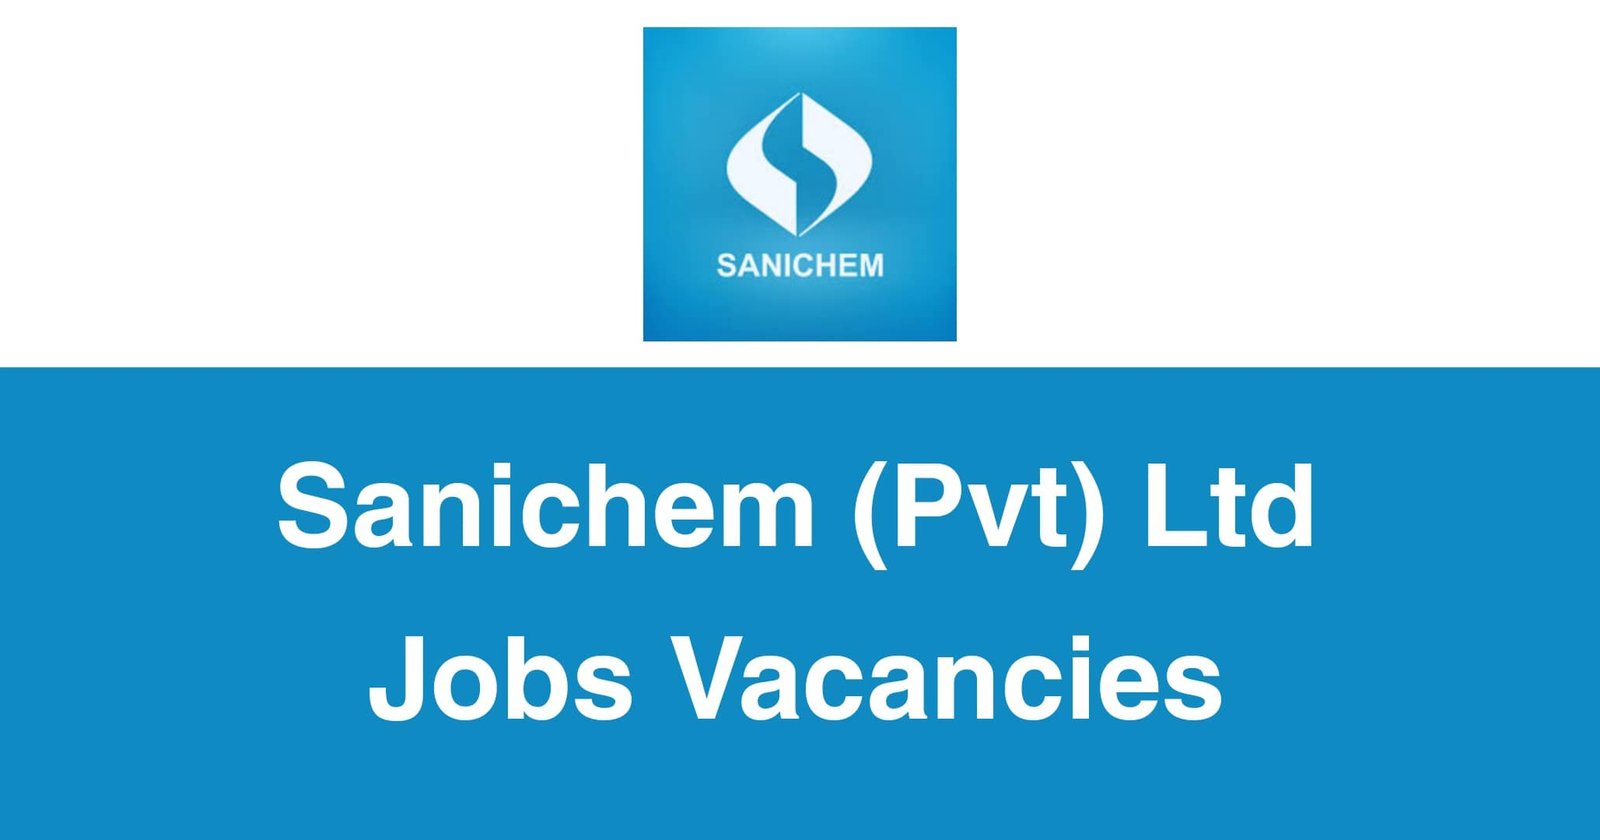 Sanichem (Pvt) Ltd Jobs Vacancies